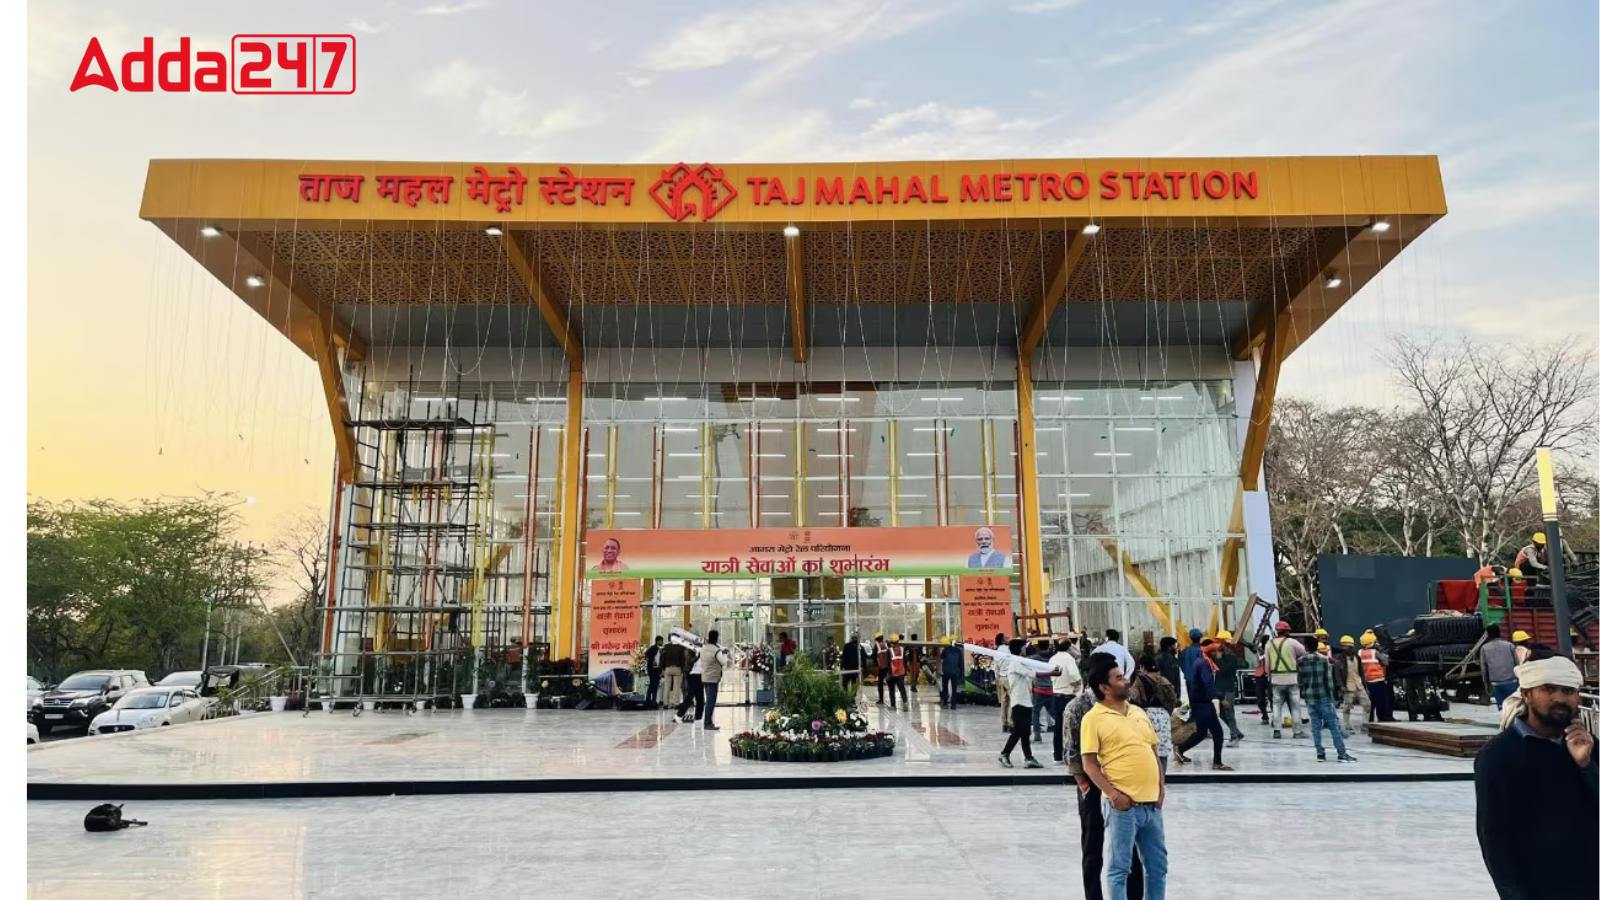 PM Modi Virtually Launches Agra Metro